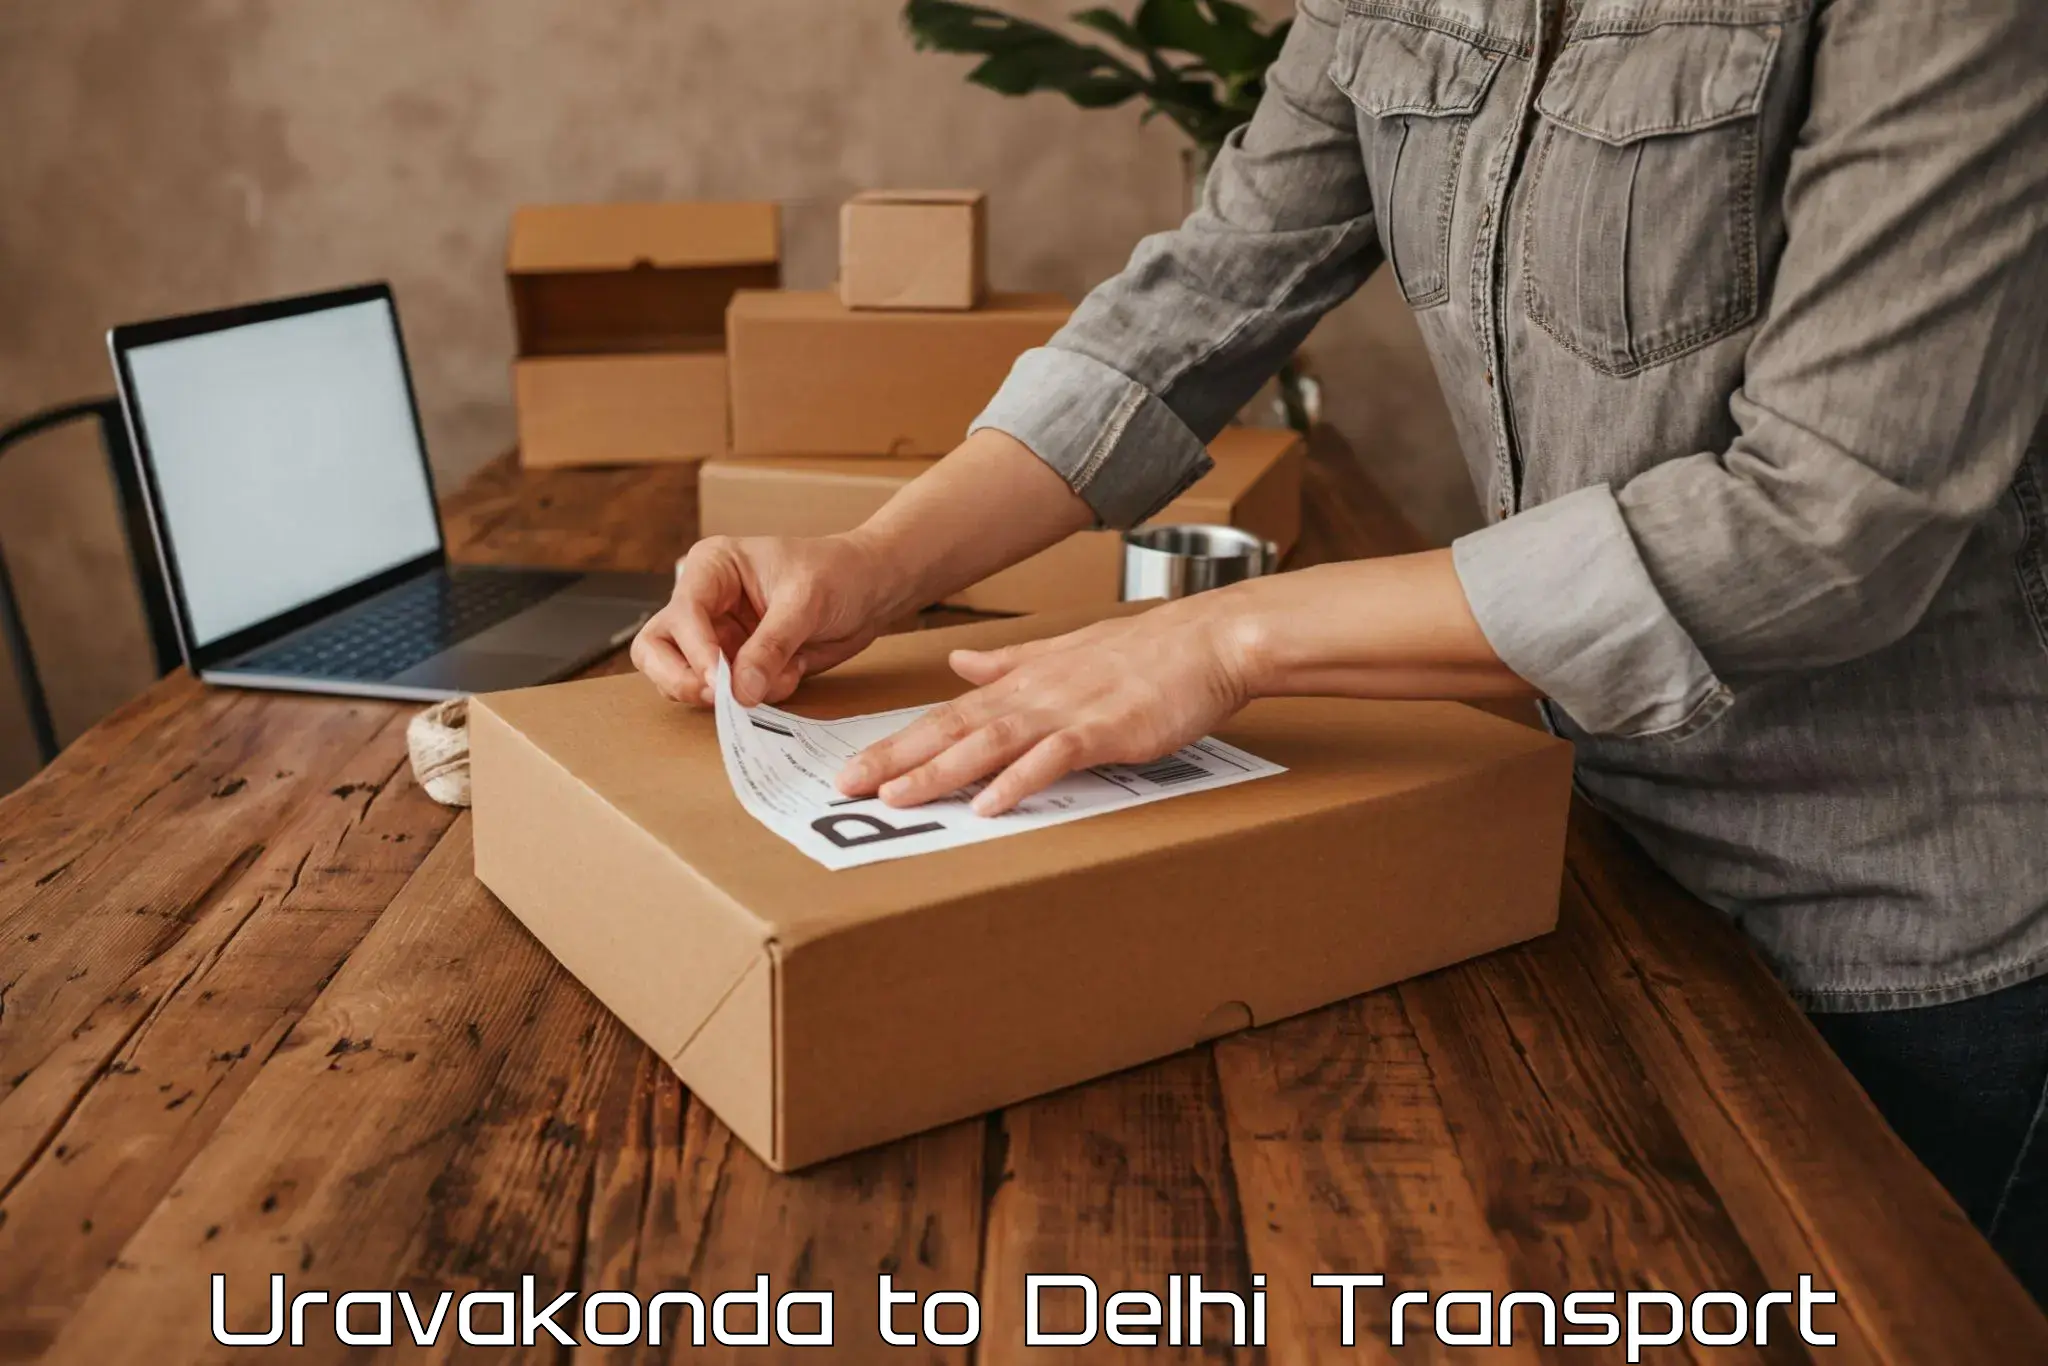 Nearby transport service Uravakonda to University of Delhi